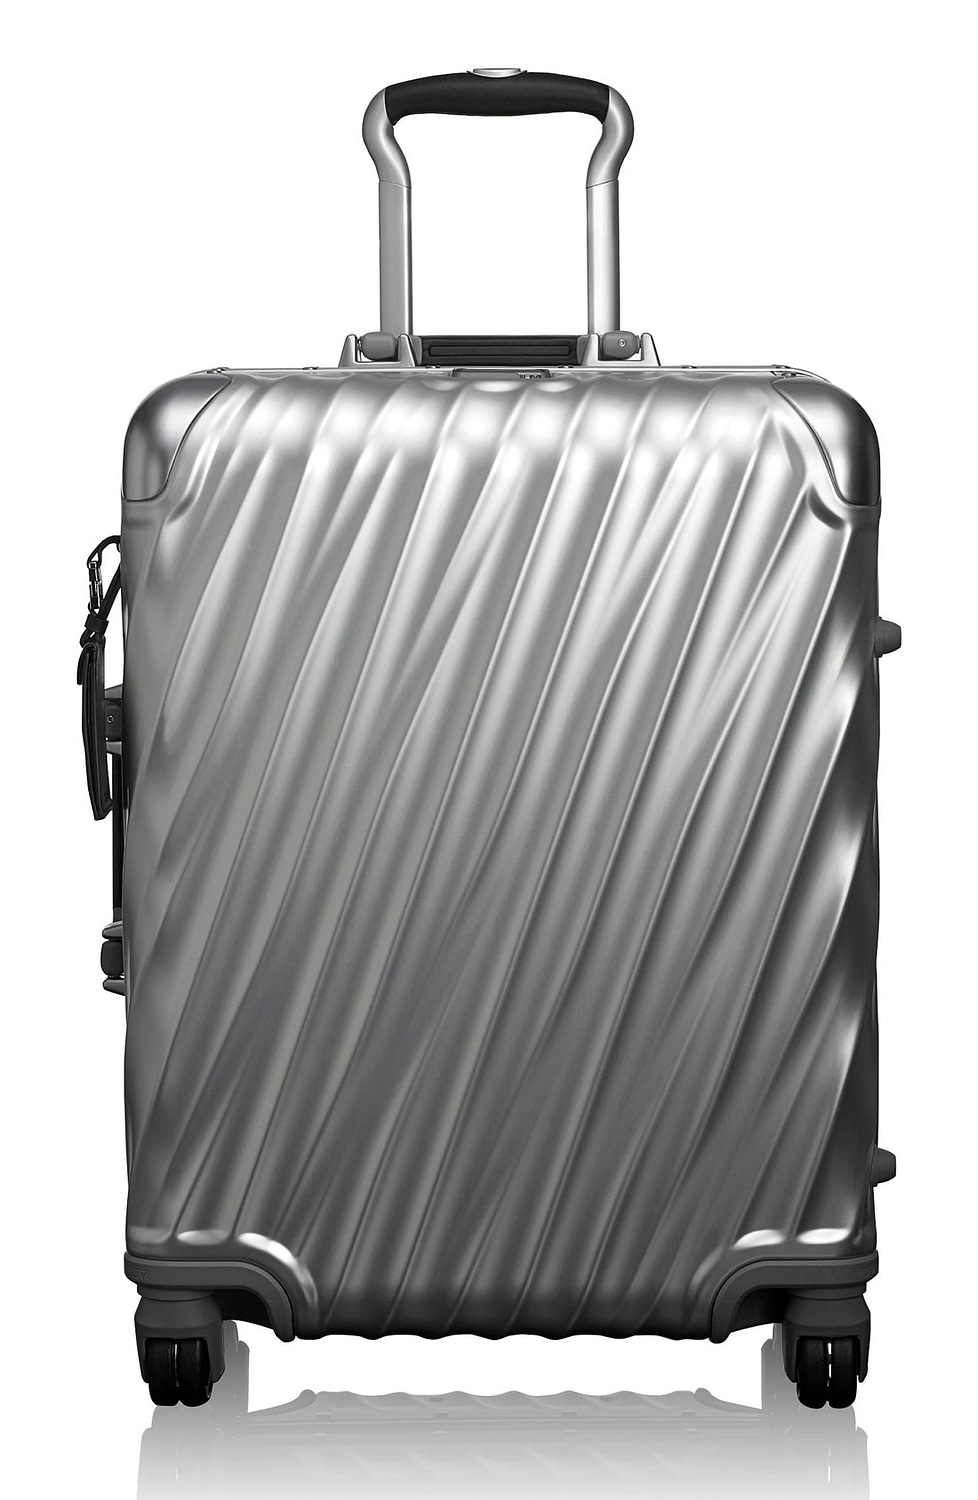 The Best Aluminum Luggage